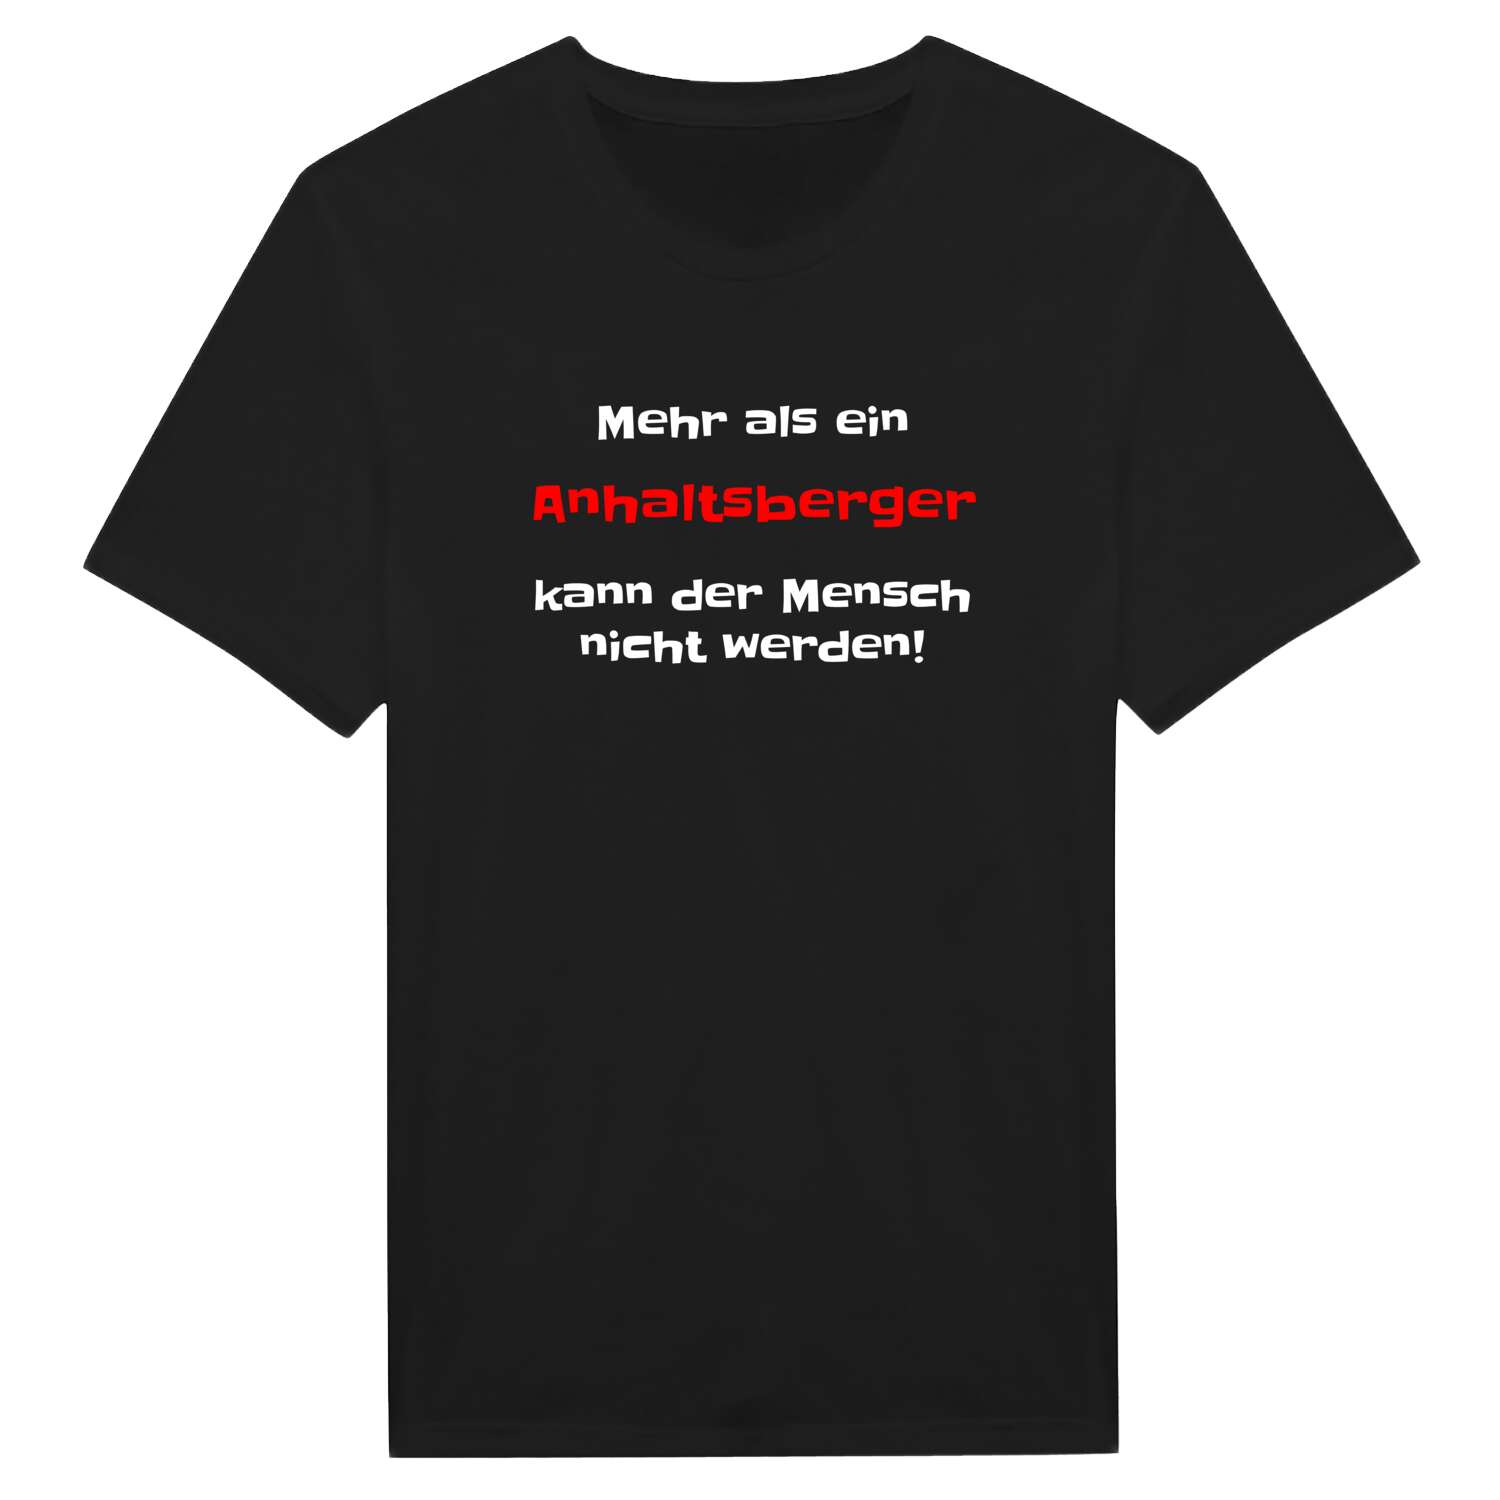 Anhaltsberg T-Shirt »Mehr als ein«